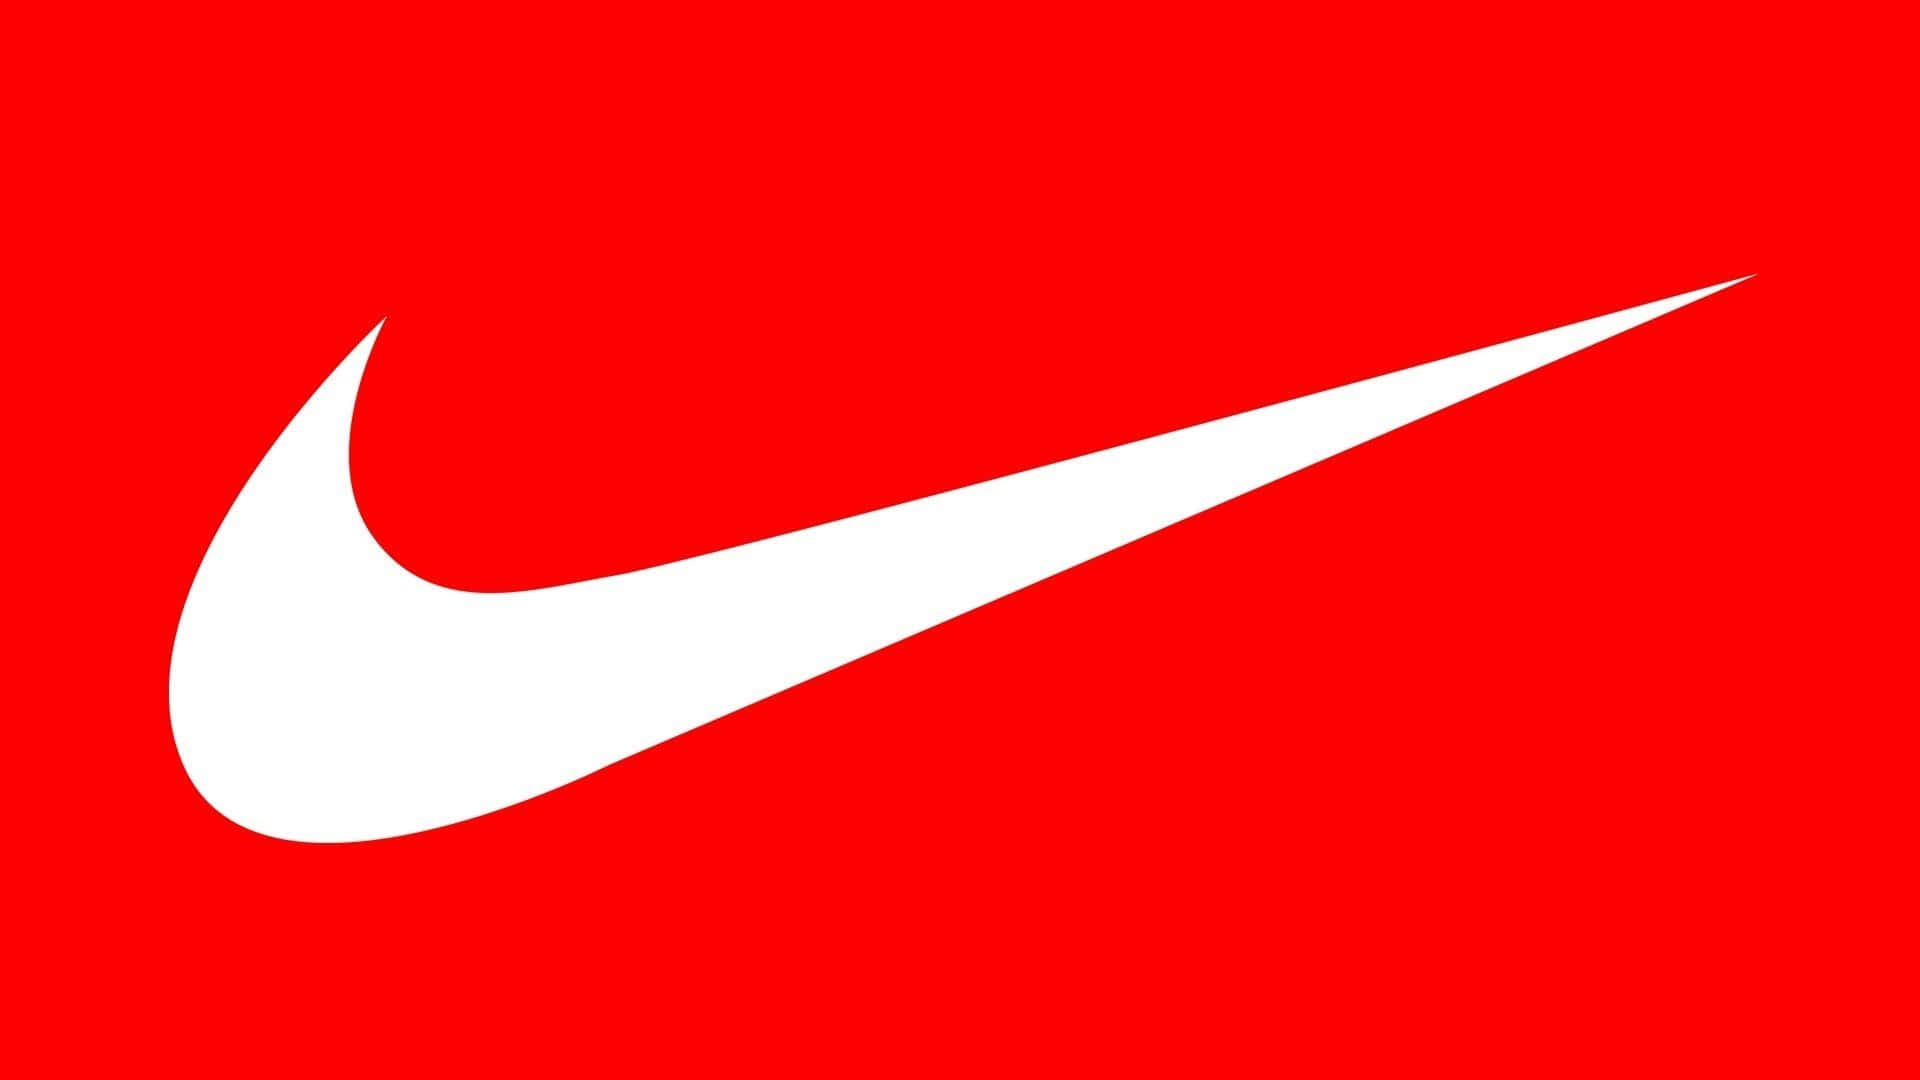 Nikeeinfach Machen Wallpaper